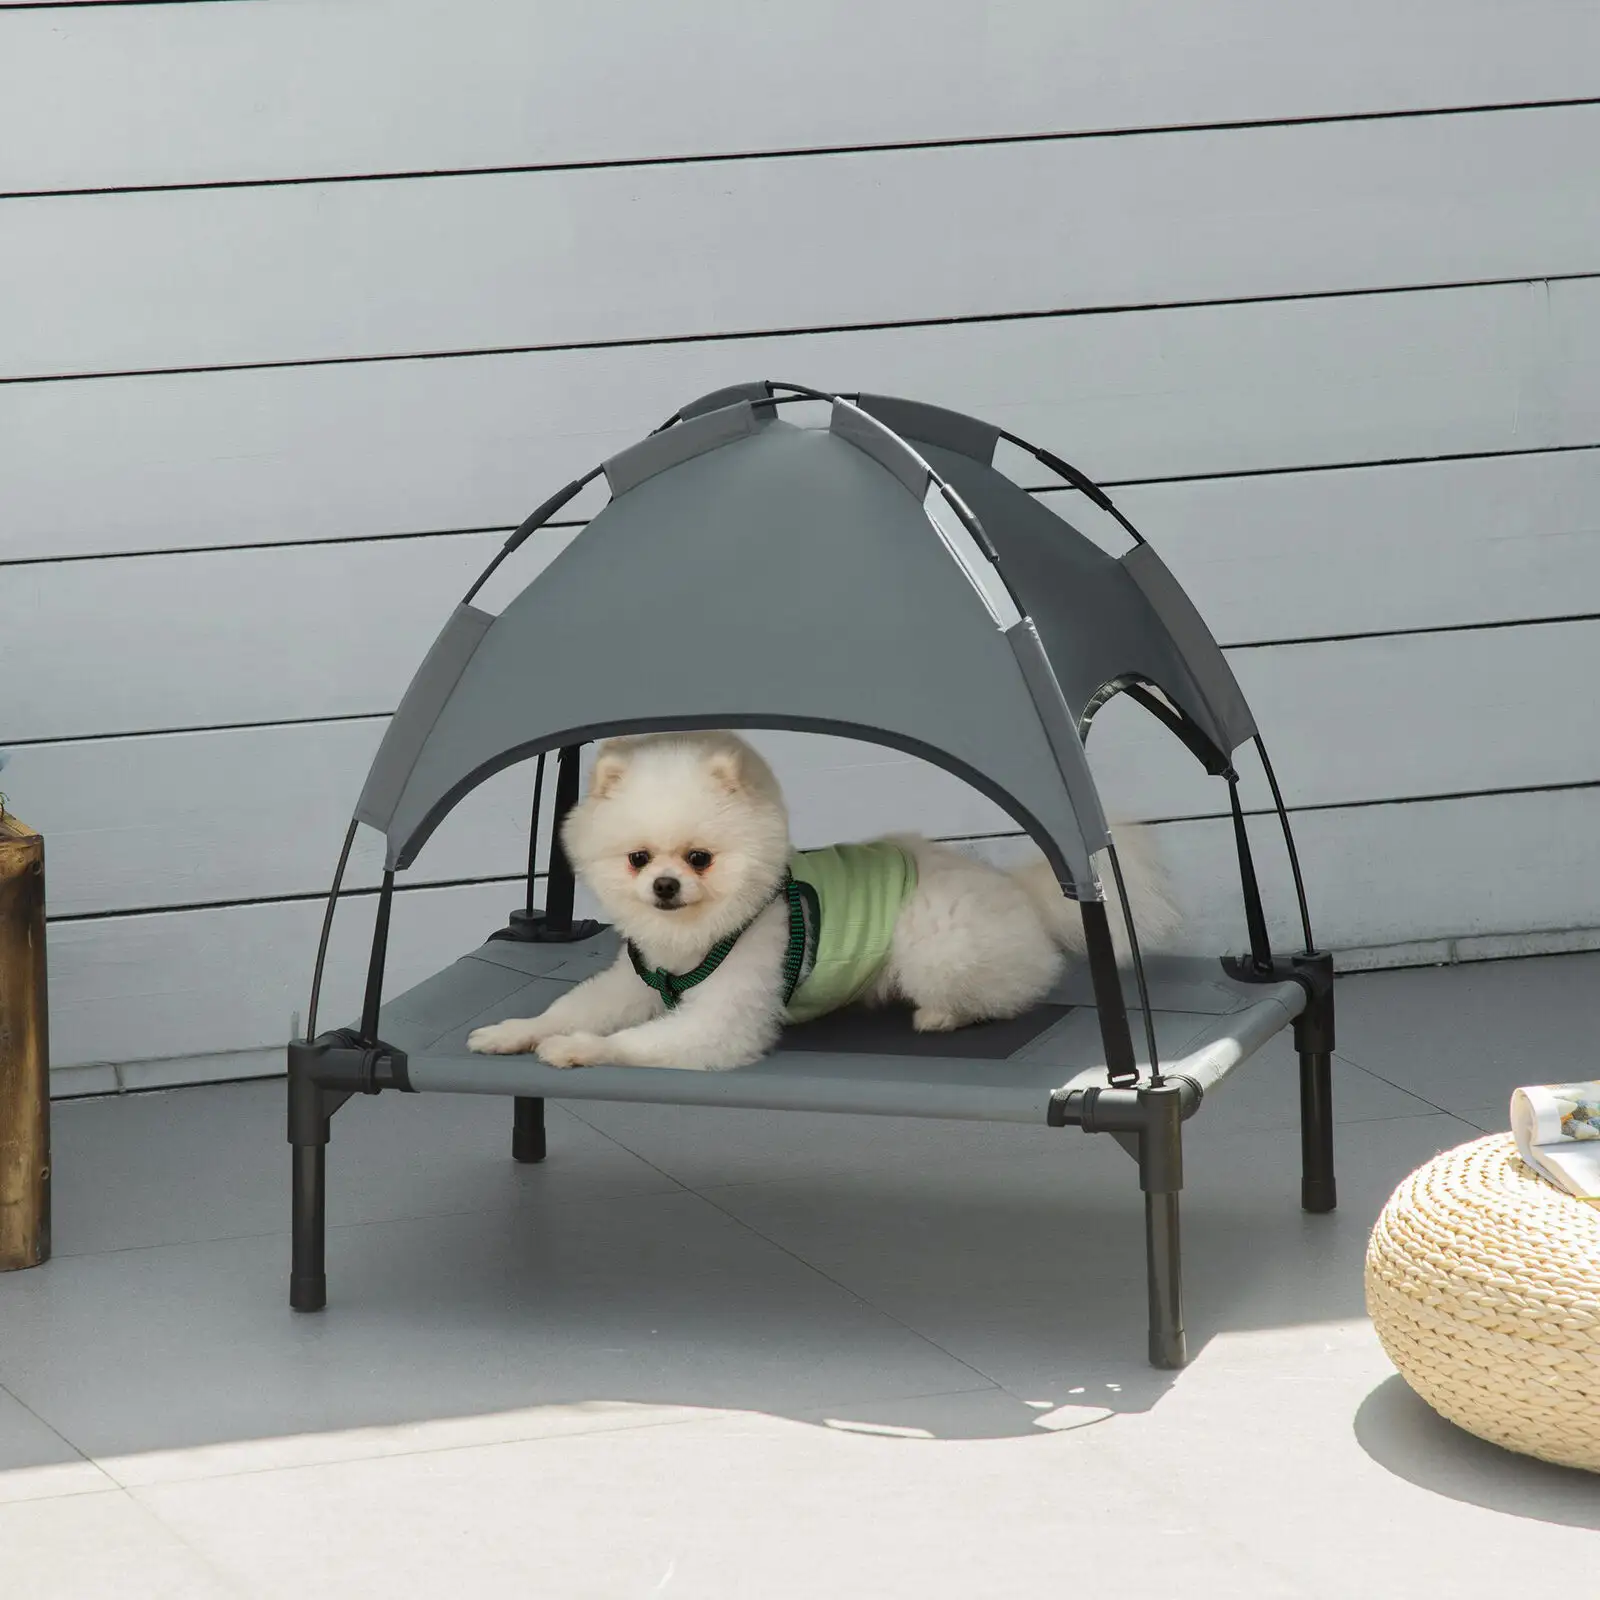 Comfort e sicurezza cane amaca macchina lavabile letto per cani con rete resistente all'acqua pet letto per l'estate